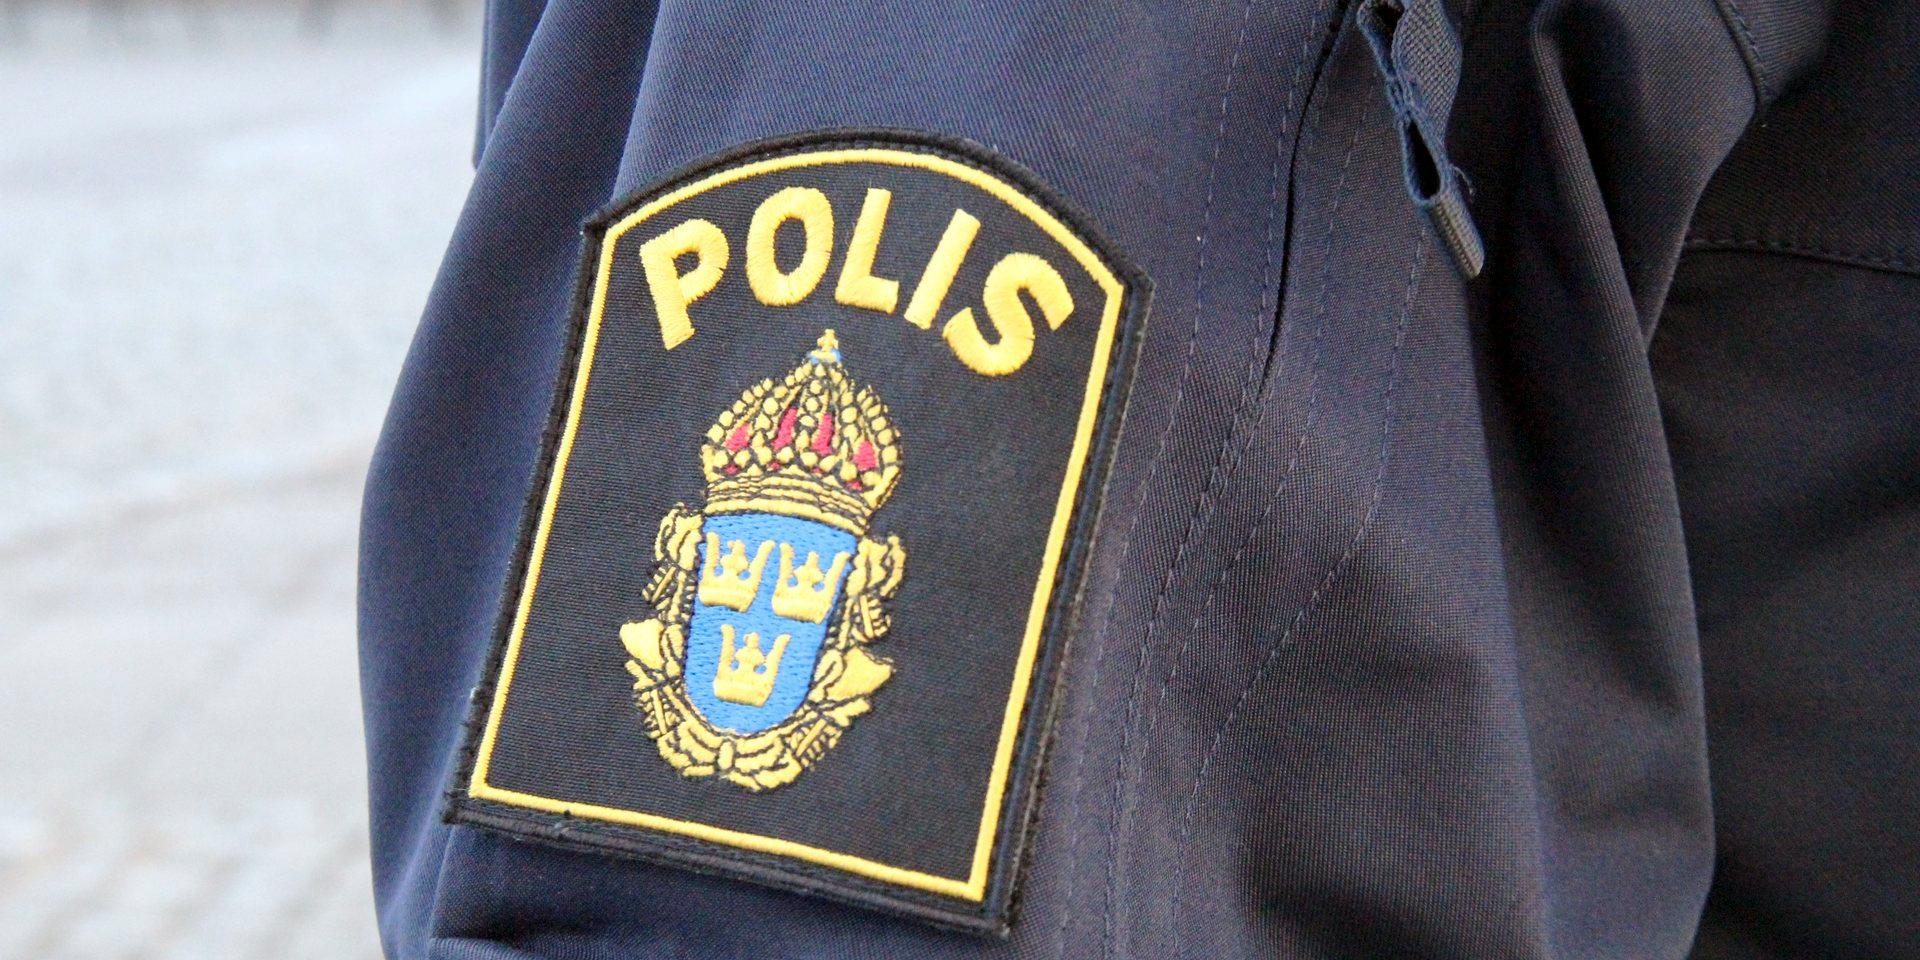 Flera stulna cyklar hittades under tisdagskvällen på Gustavsbergsgatan. Samma kväll besköts en polis med röd laser på adressen. 